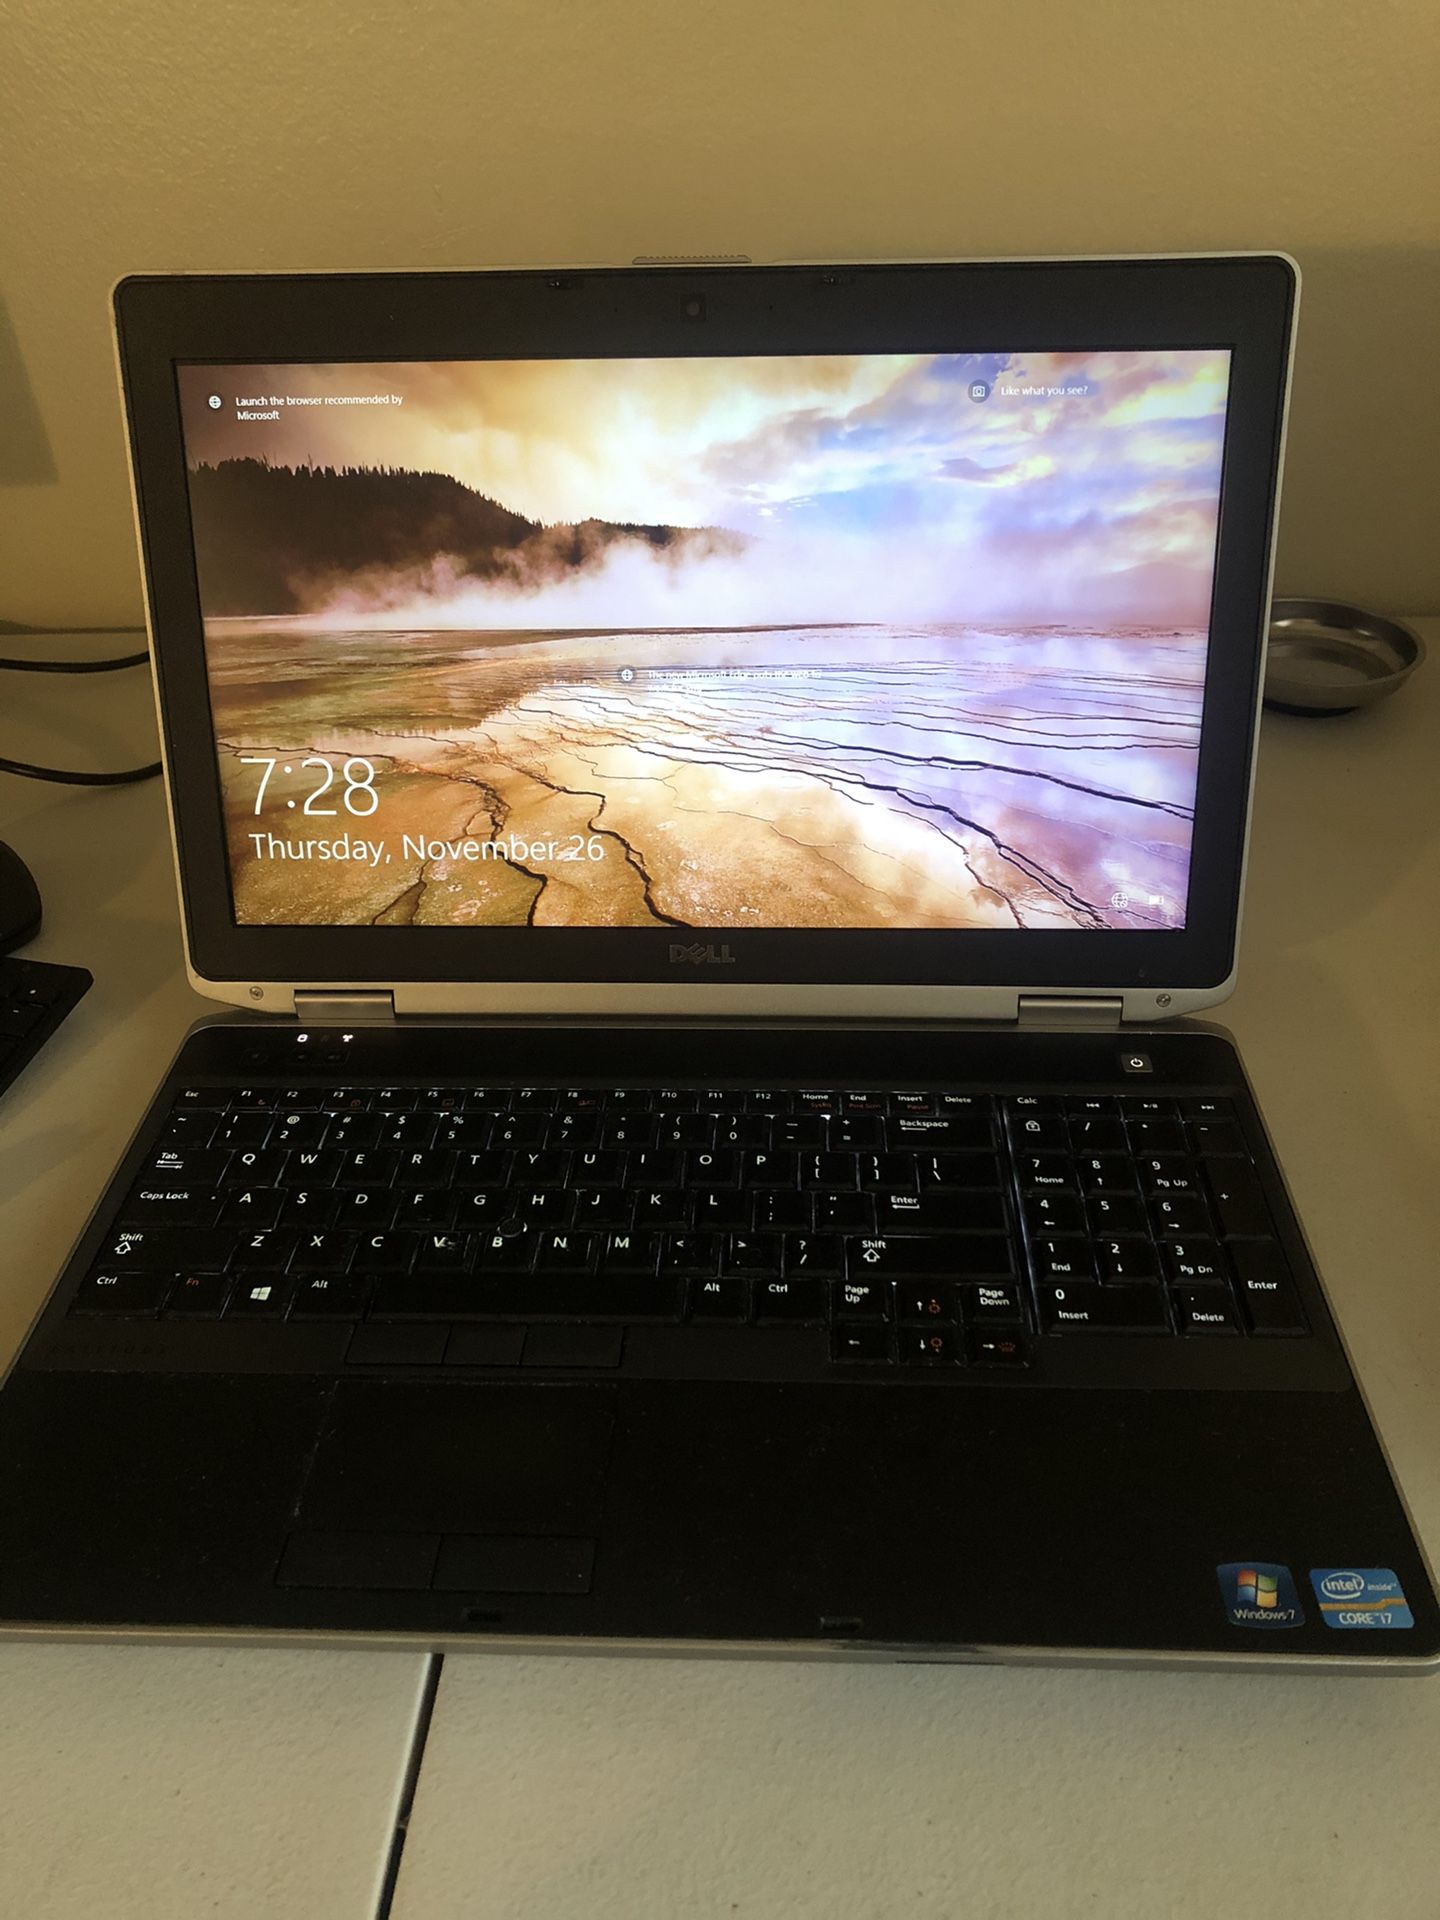 Dell Latitude E6530 Laptop